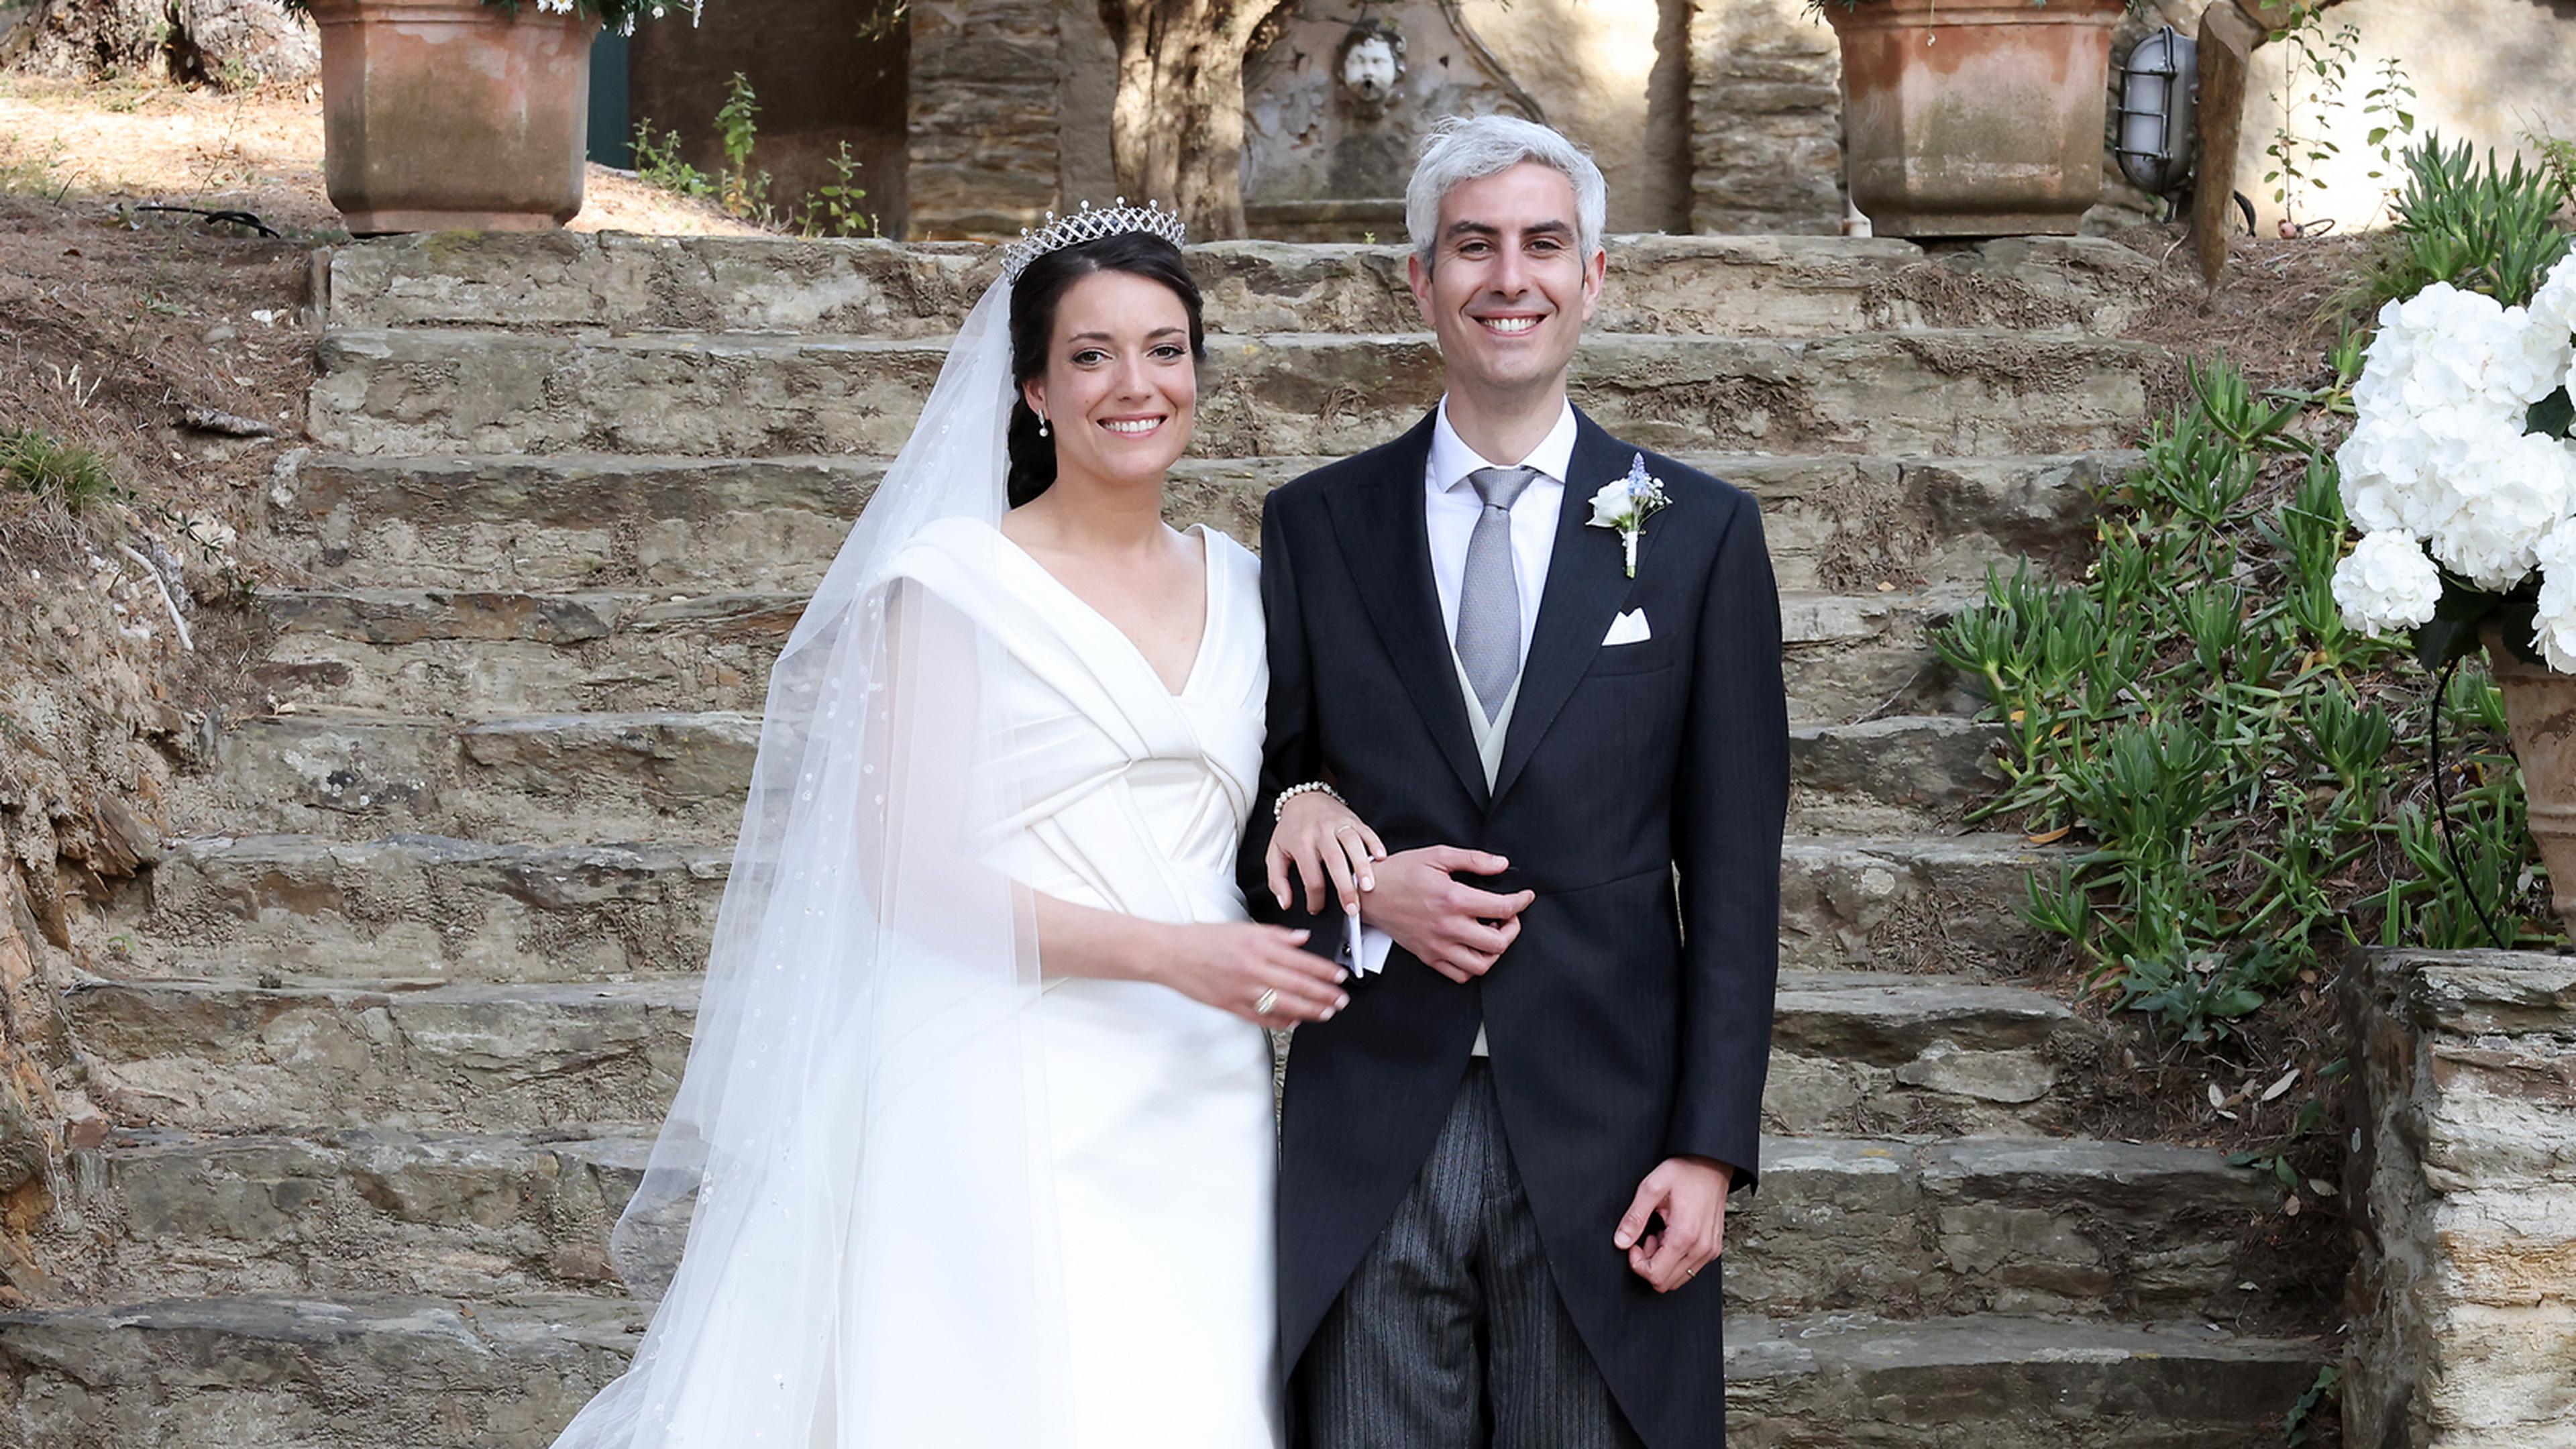 Das überglückliche Brautpaar posierte für eine offizielle Aufnahme nach der kirchlichen Trauung auf einer Steintreppe.